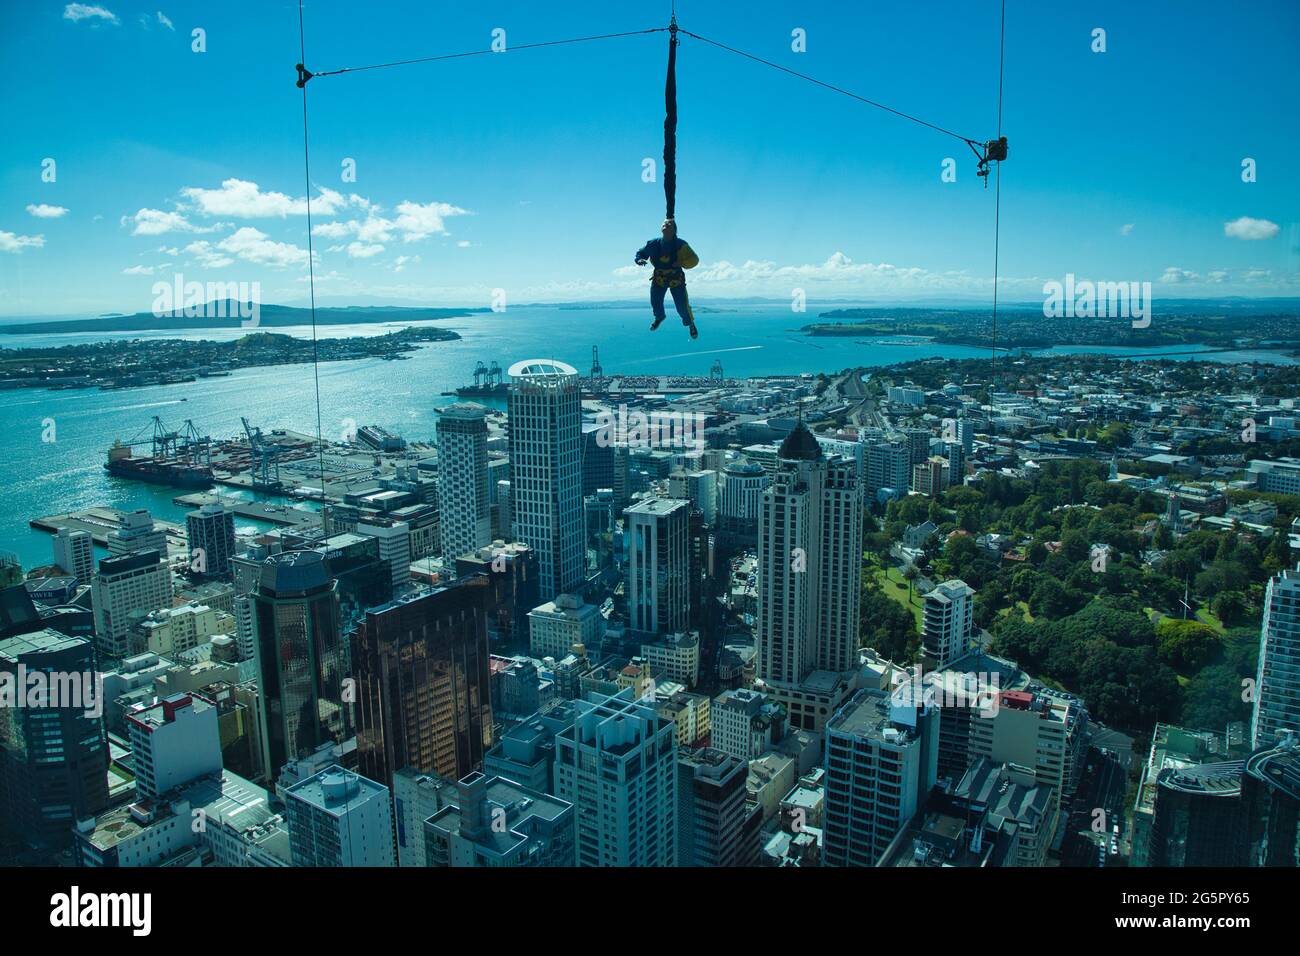 Eine Person hängt in der Luft, kurz bevor sie einen mitgedehnten Himmelsfall vom Sky Tower in Auckland, Nordinsel, Neuseeland, mit Stadtgebäuden dahinter macht Stockfoto